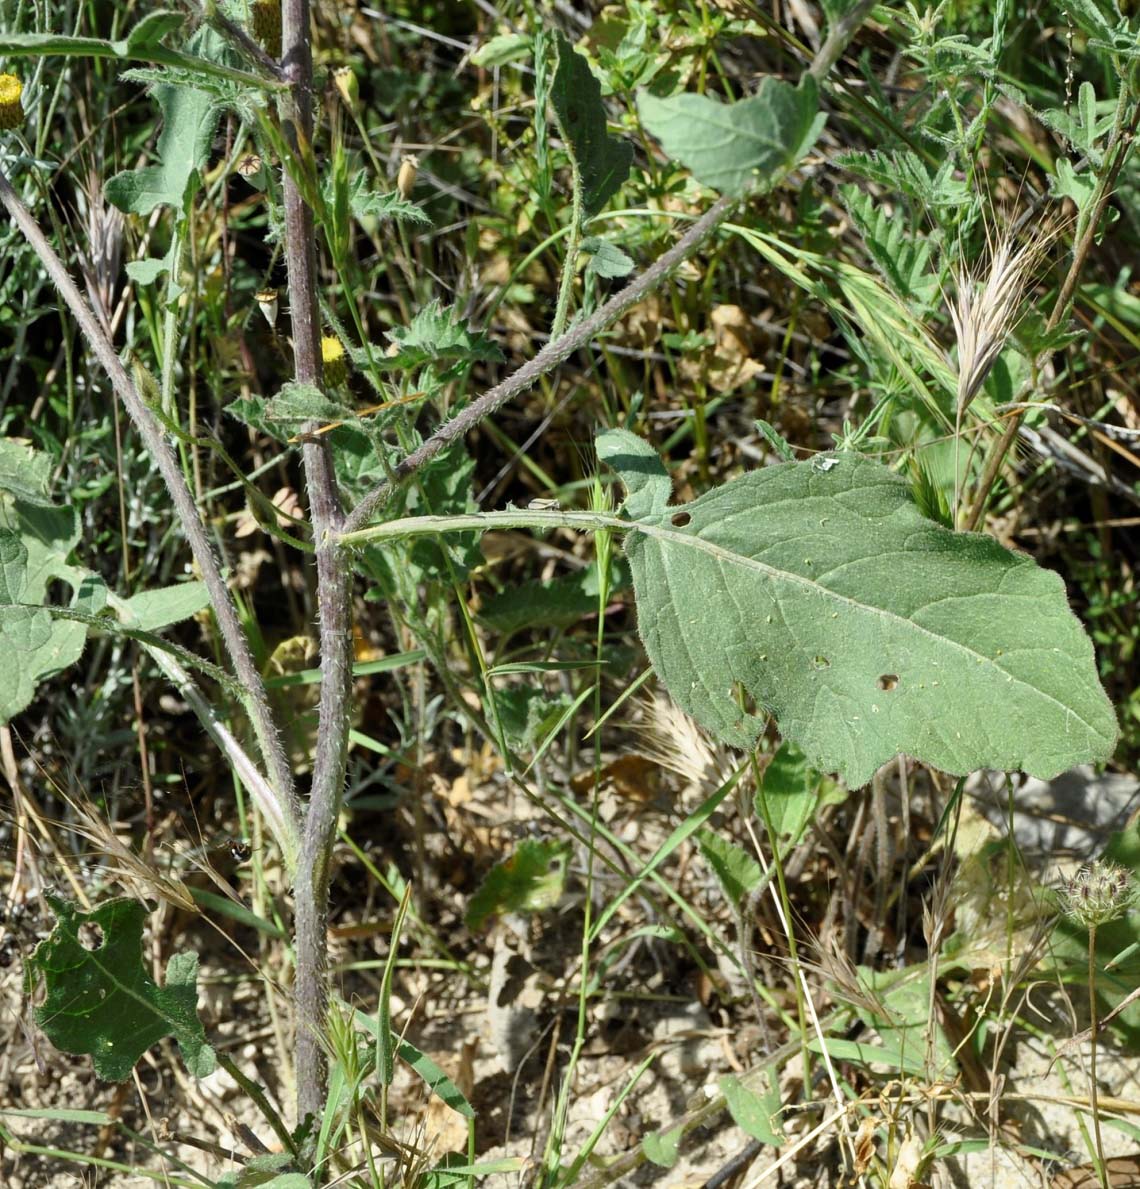 Image of genus Brassica specimen.